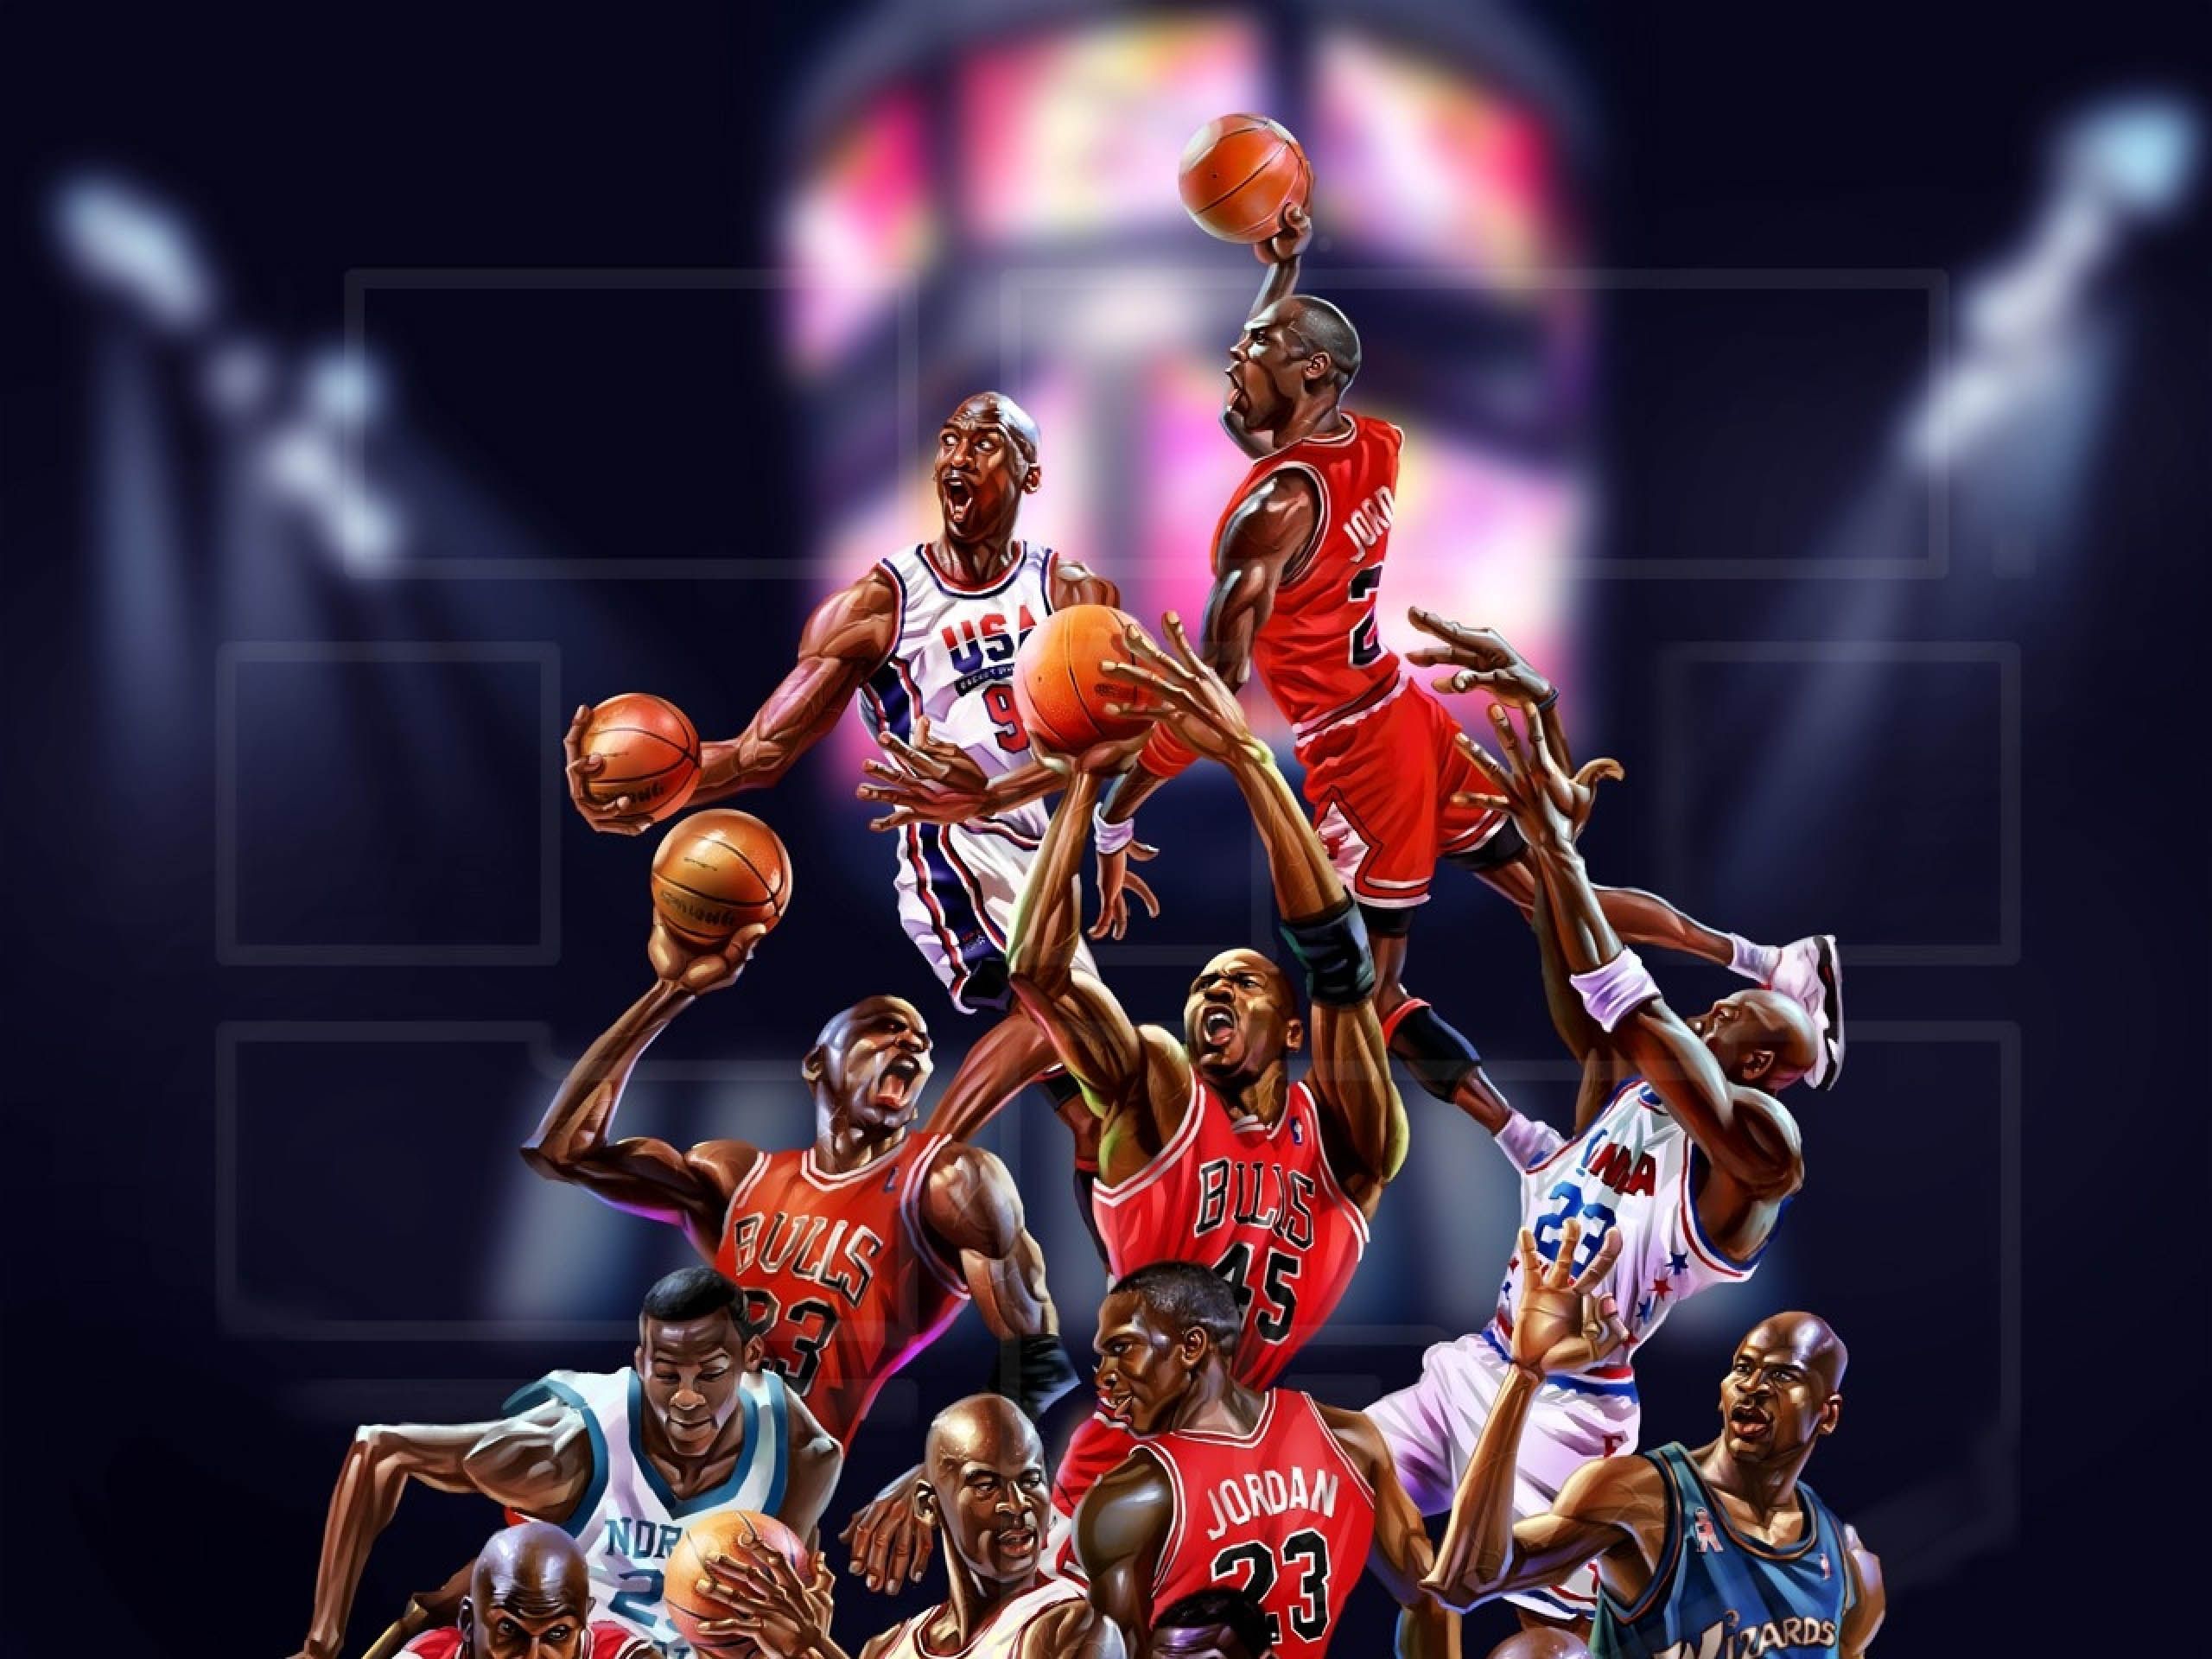 Michael Jordan Cartoon Wallpaper Free Michael Jordan Cartoon Background